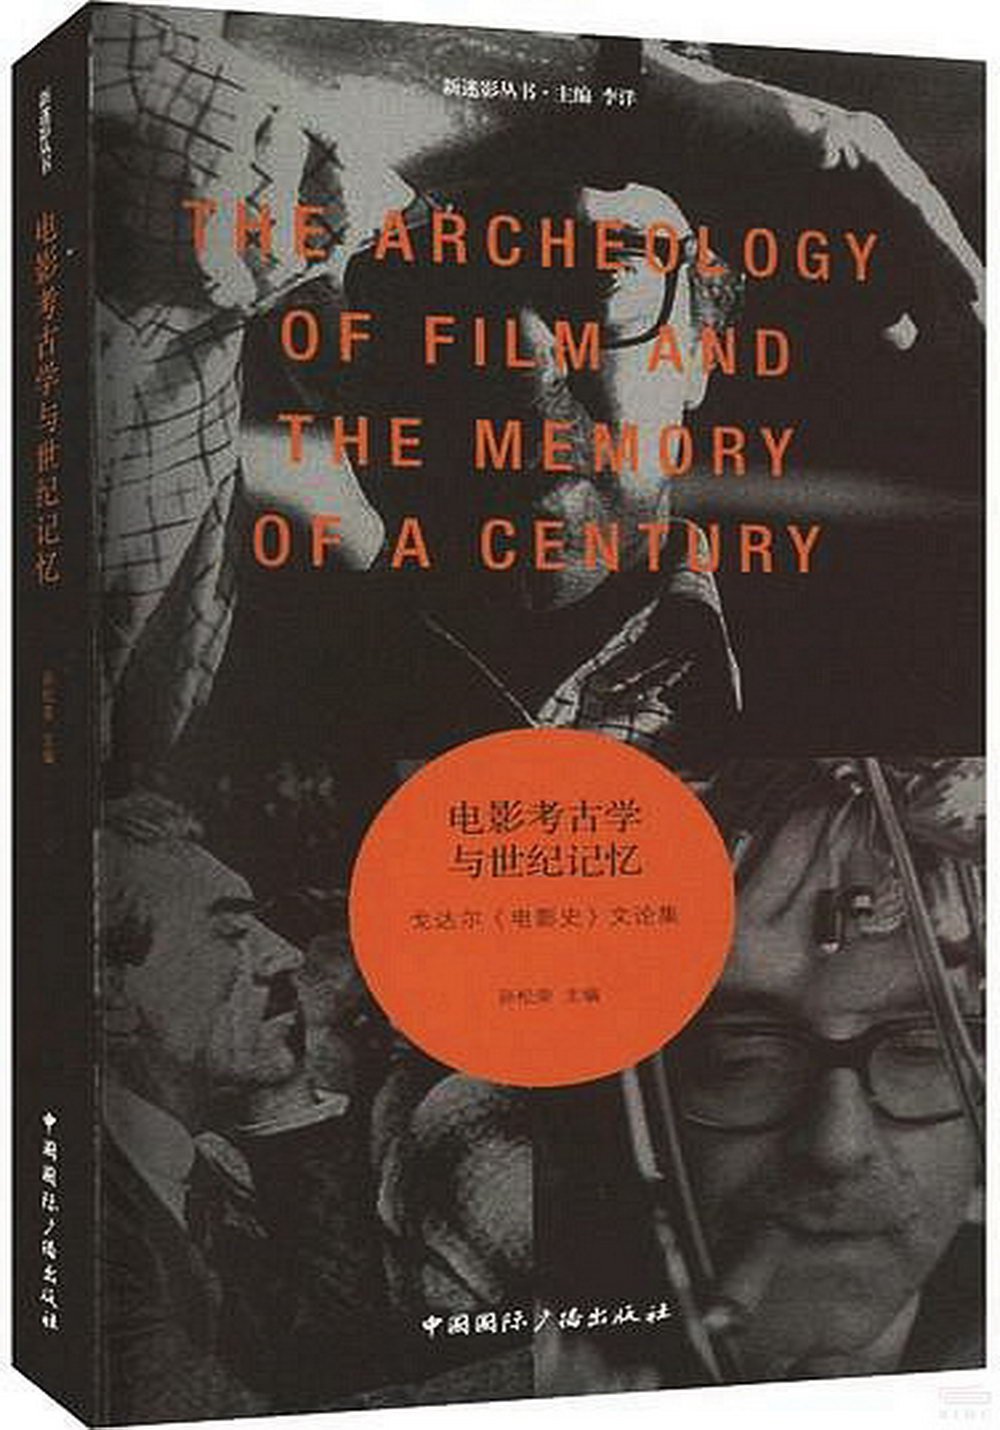 電影考古學與世紀記憶：戈達爾《電影史》文論集